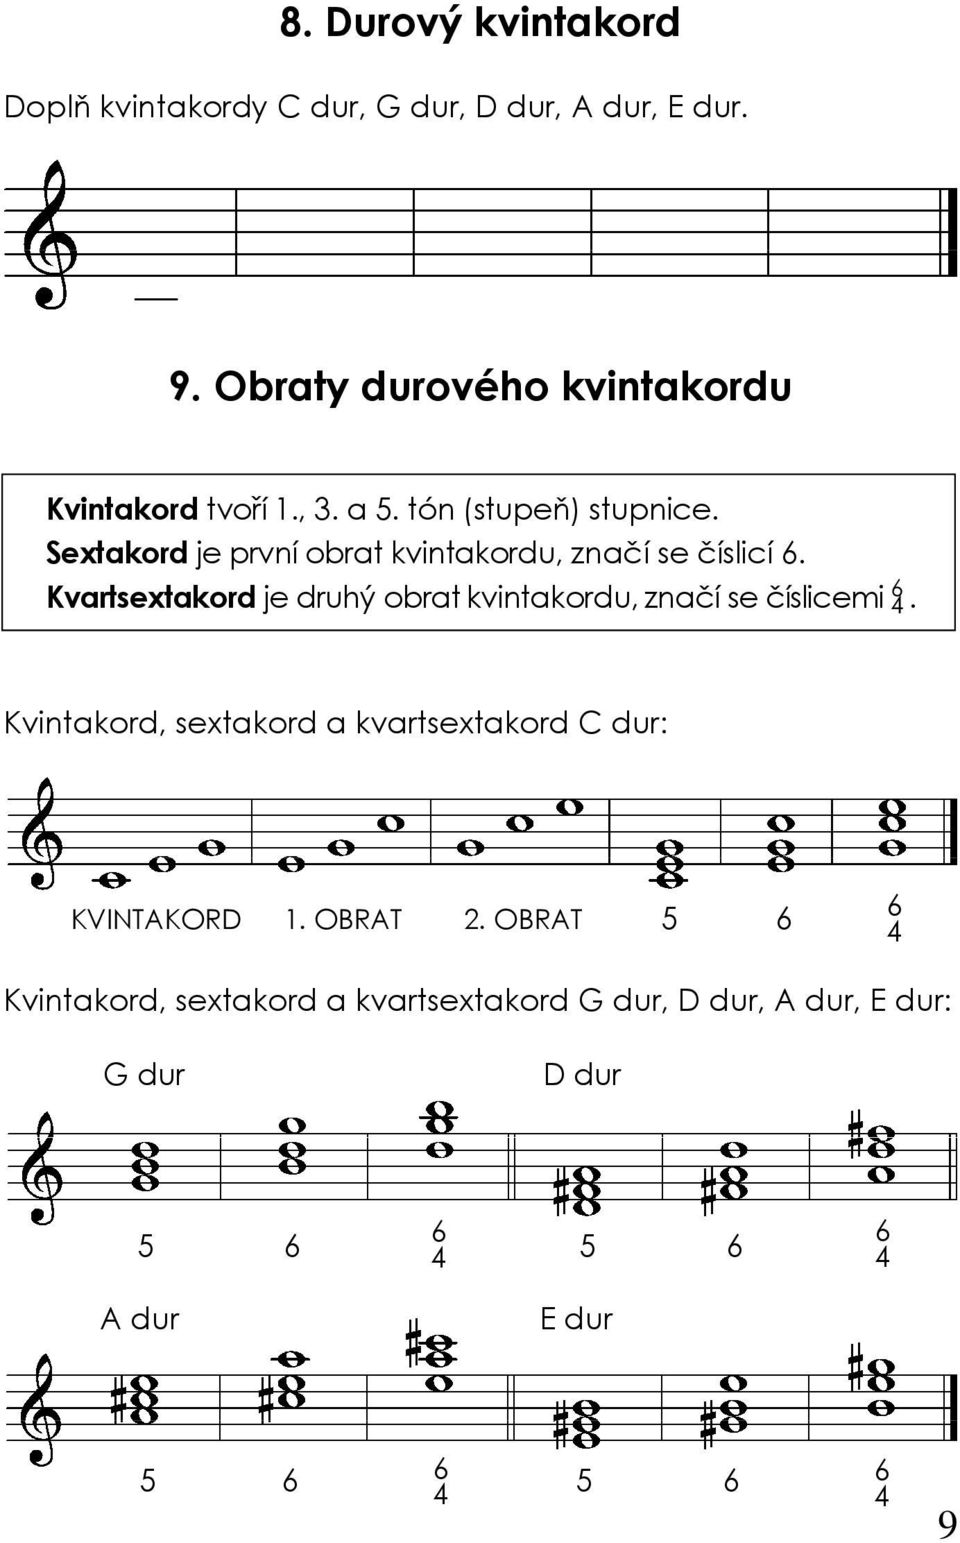 Sextakord je první obrat kvintakordu, značí se číslicí 6.